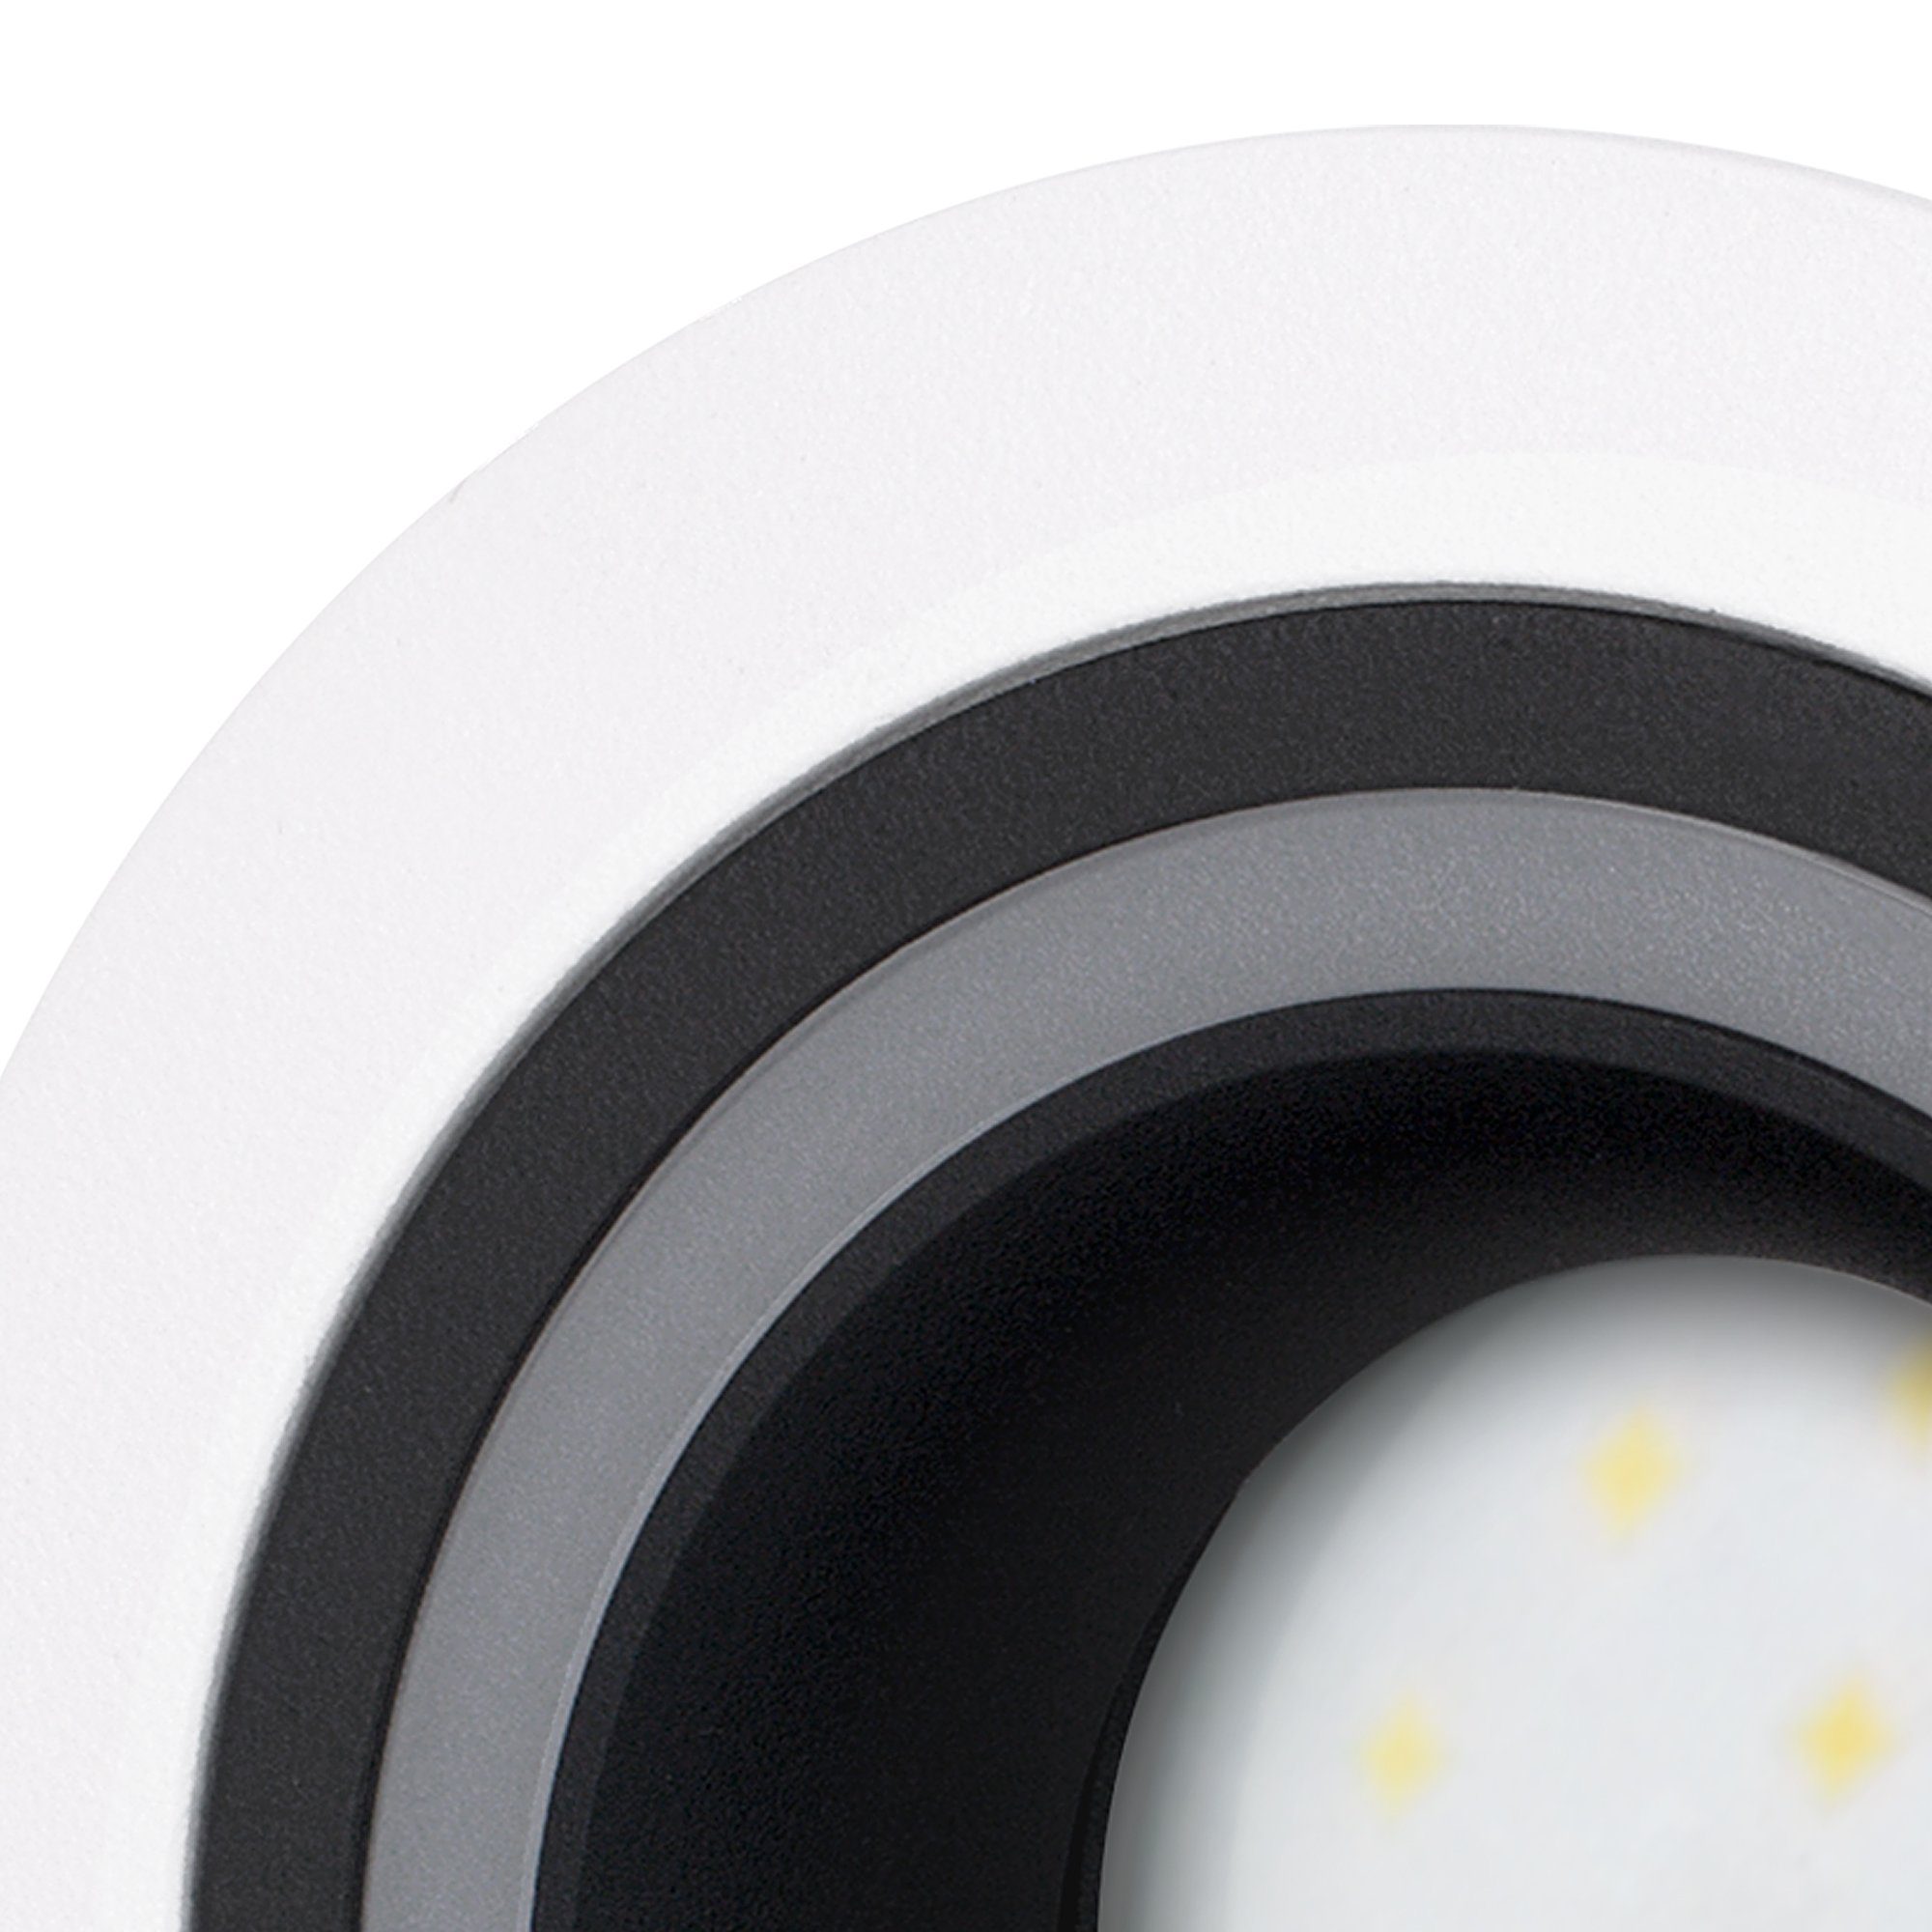 Design 5W Matapo SSC-LUXon neutralweiss, LED Neutralweiß LED mit schwarz Modul Einbaustrahler weiss Einbauspot